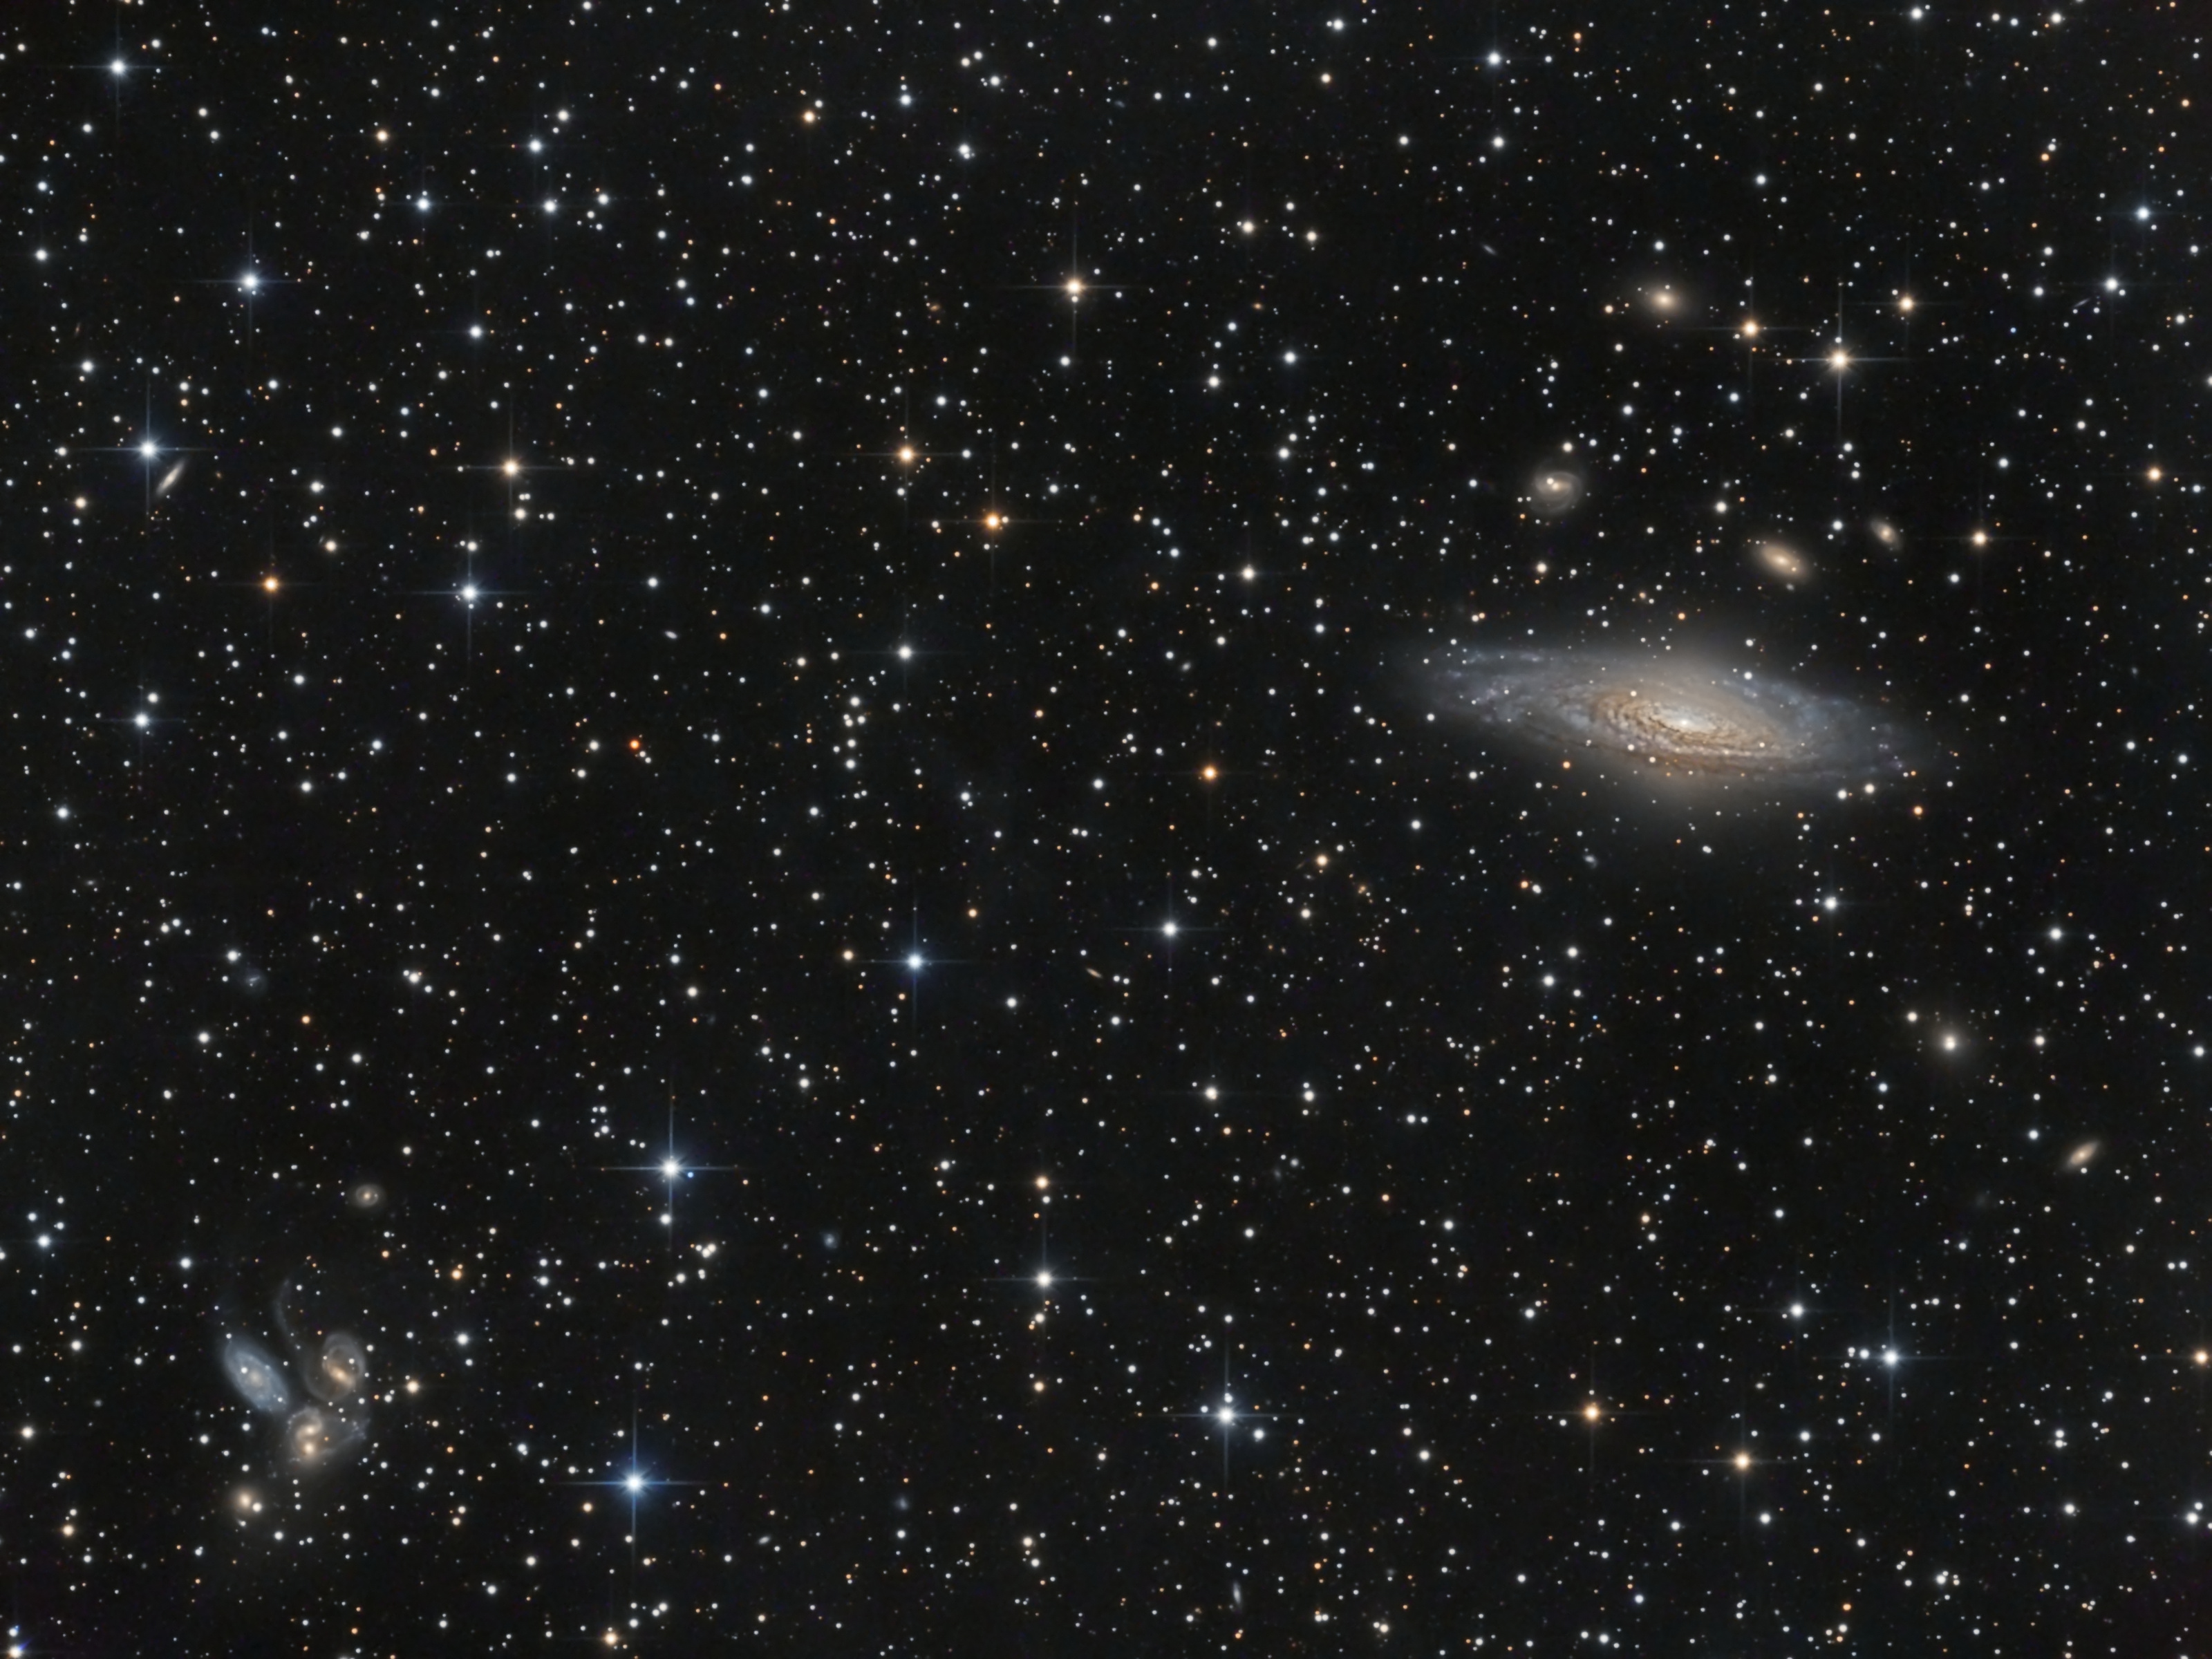 Галактика NGC7331 и Квинтет Стефана в Пегасе. Третья проба за 3 года :)